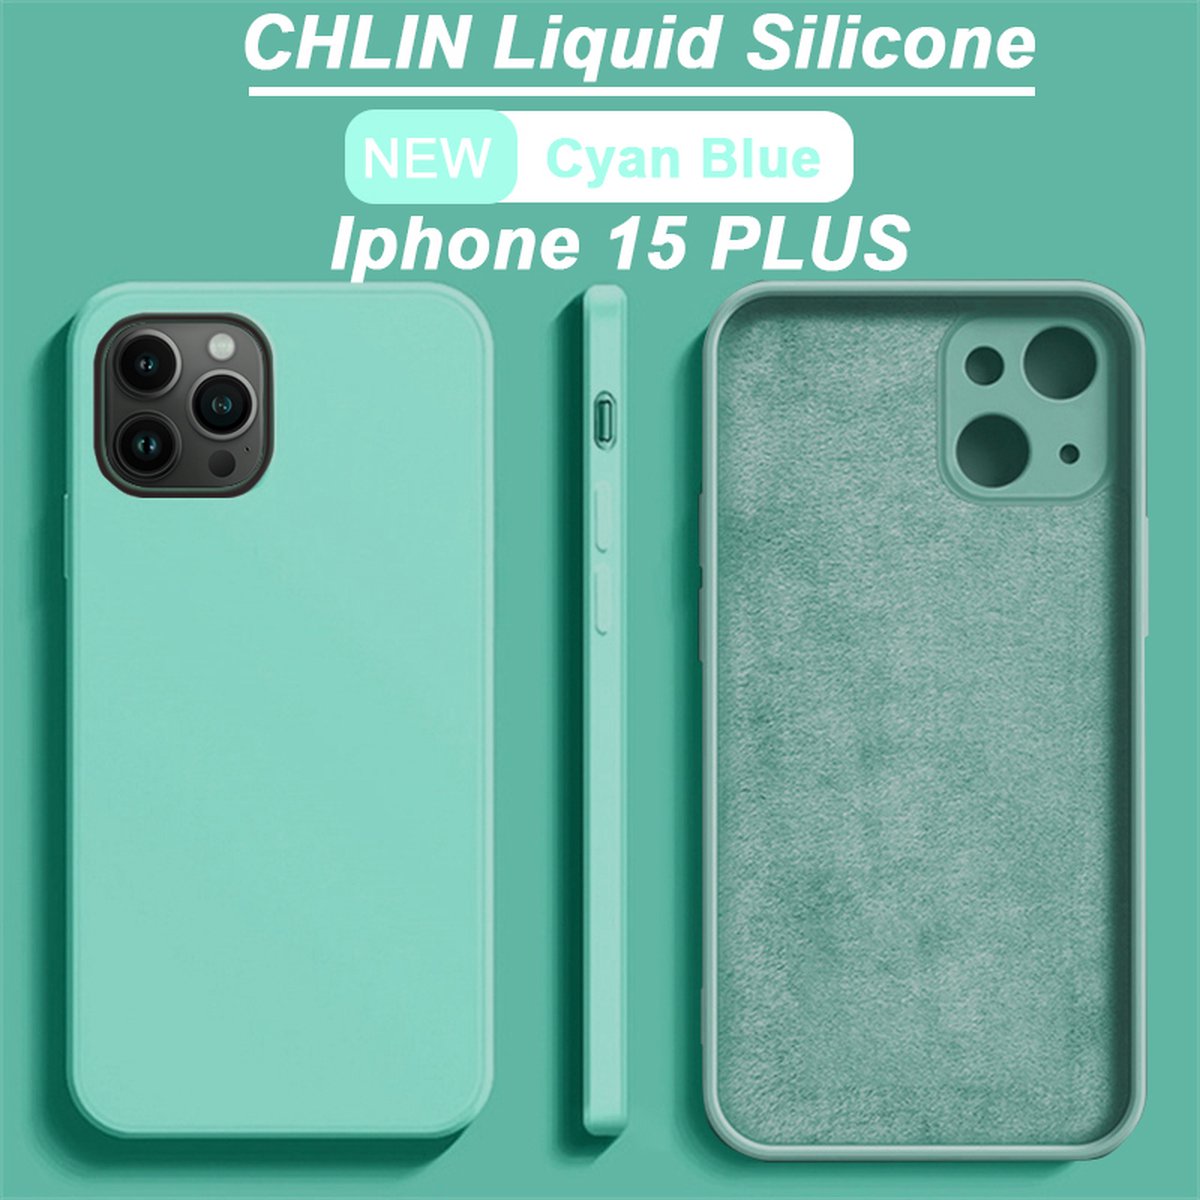 CL CHLIN® Premium Siliconen Case Iphone 15 Plus Blauw - Iphone 15 Plus hoesje - Iphone 15 Plus case - Iphone 15 Plus hoes - Silicone hoesje - Iphone 15 Plus protection - Iphone 15 Plus protector.